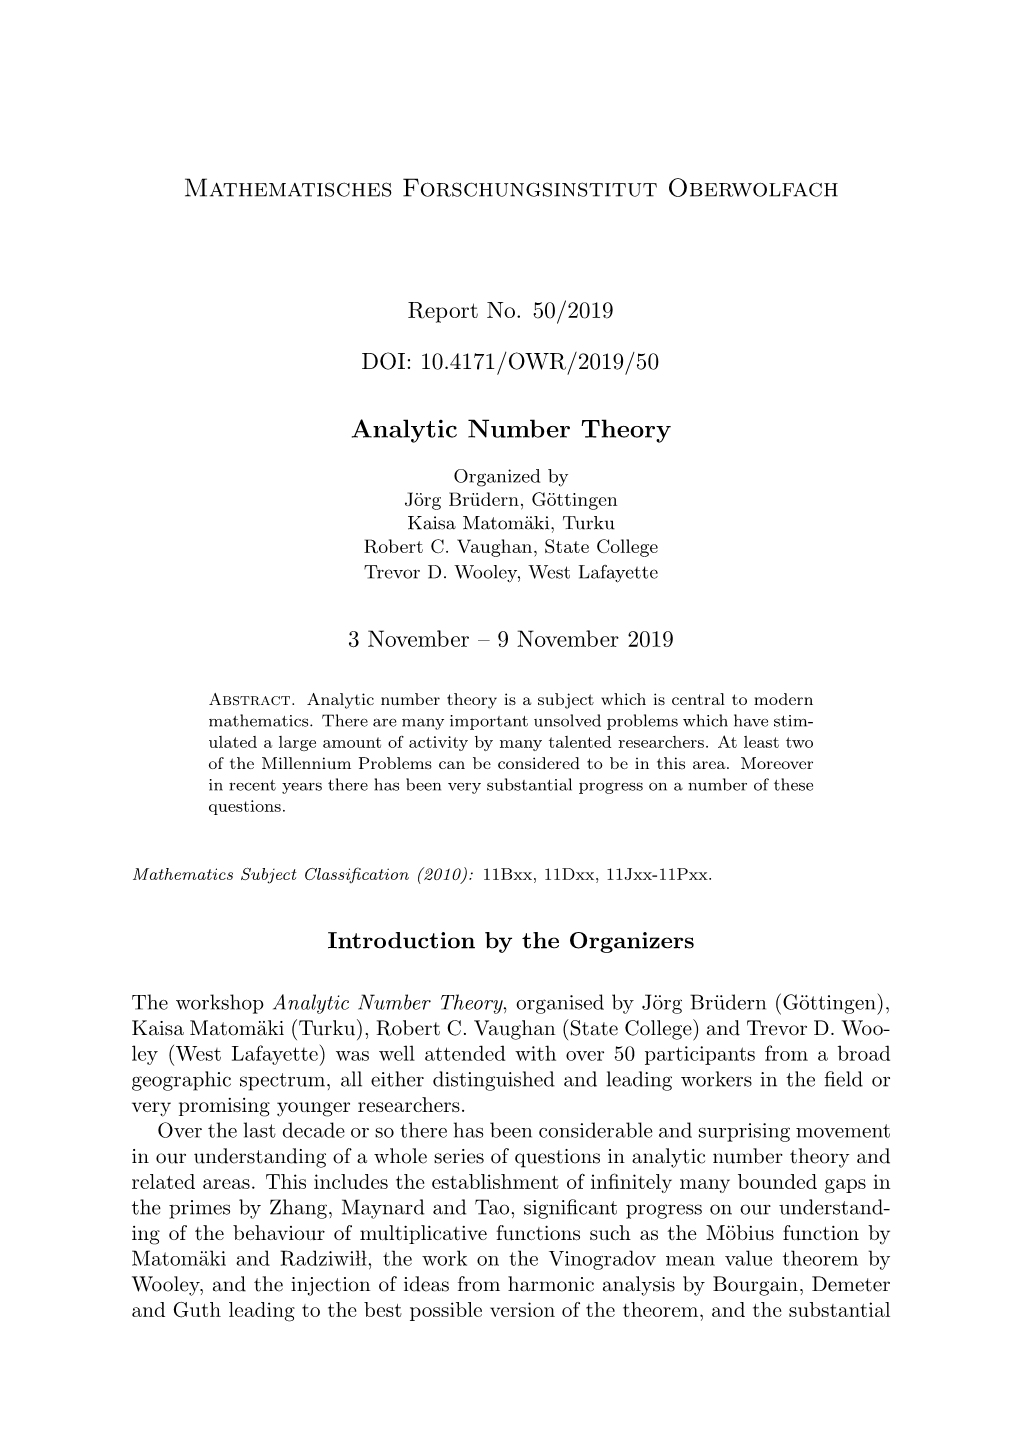 Mathematisches Forschungsinstitut Oberwolfach Analytic Number Theory